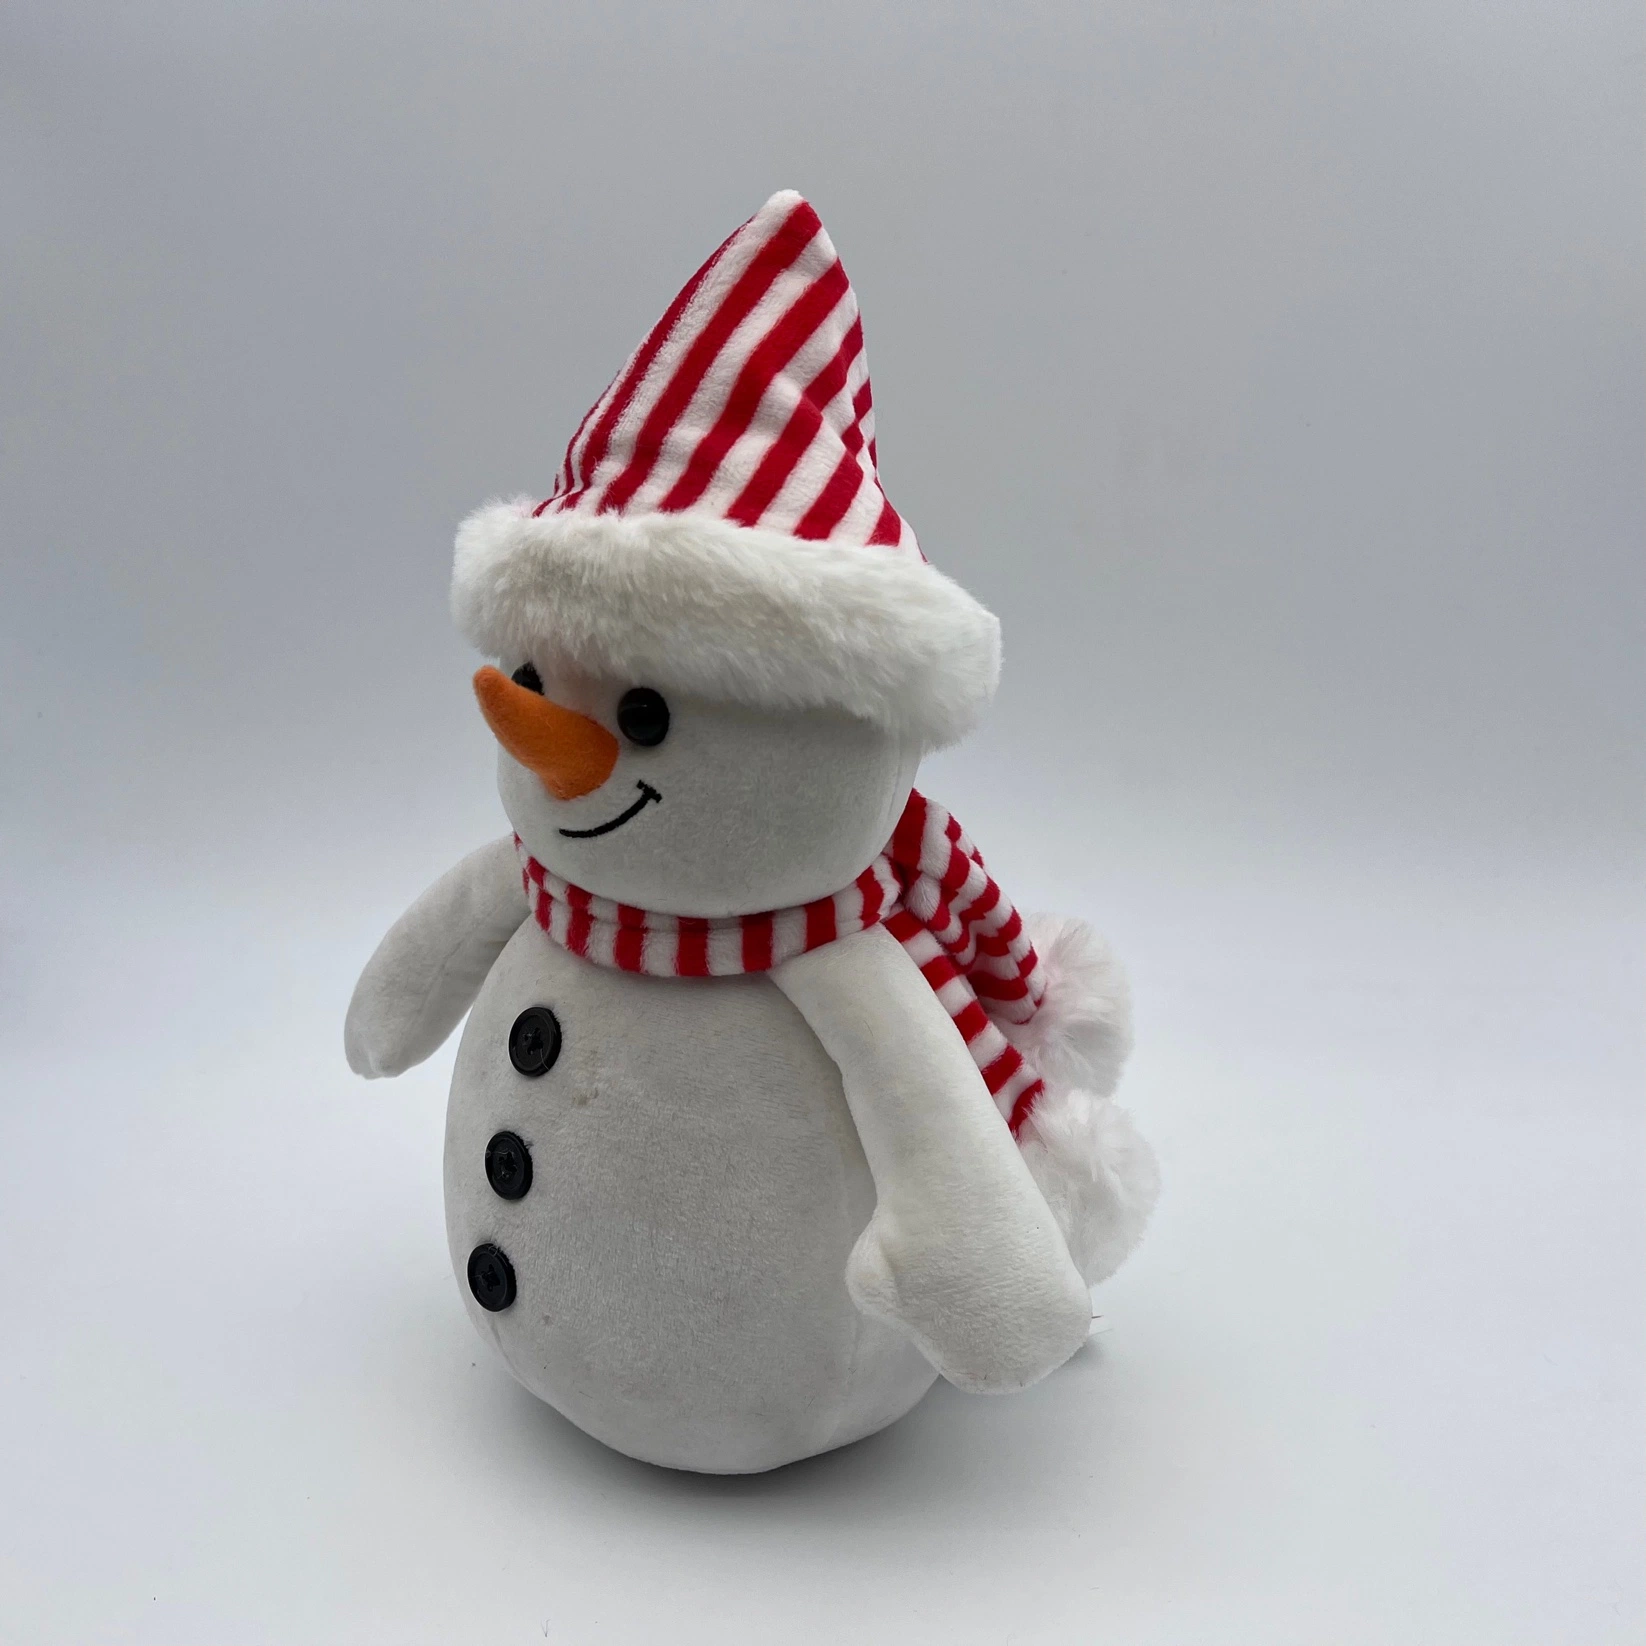 Cadeau promotionnel Bonhomme de neige noël santa rennes des jouets en peluche en vrac/Penguin un jouet mou, ours en peluche de Noël